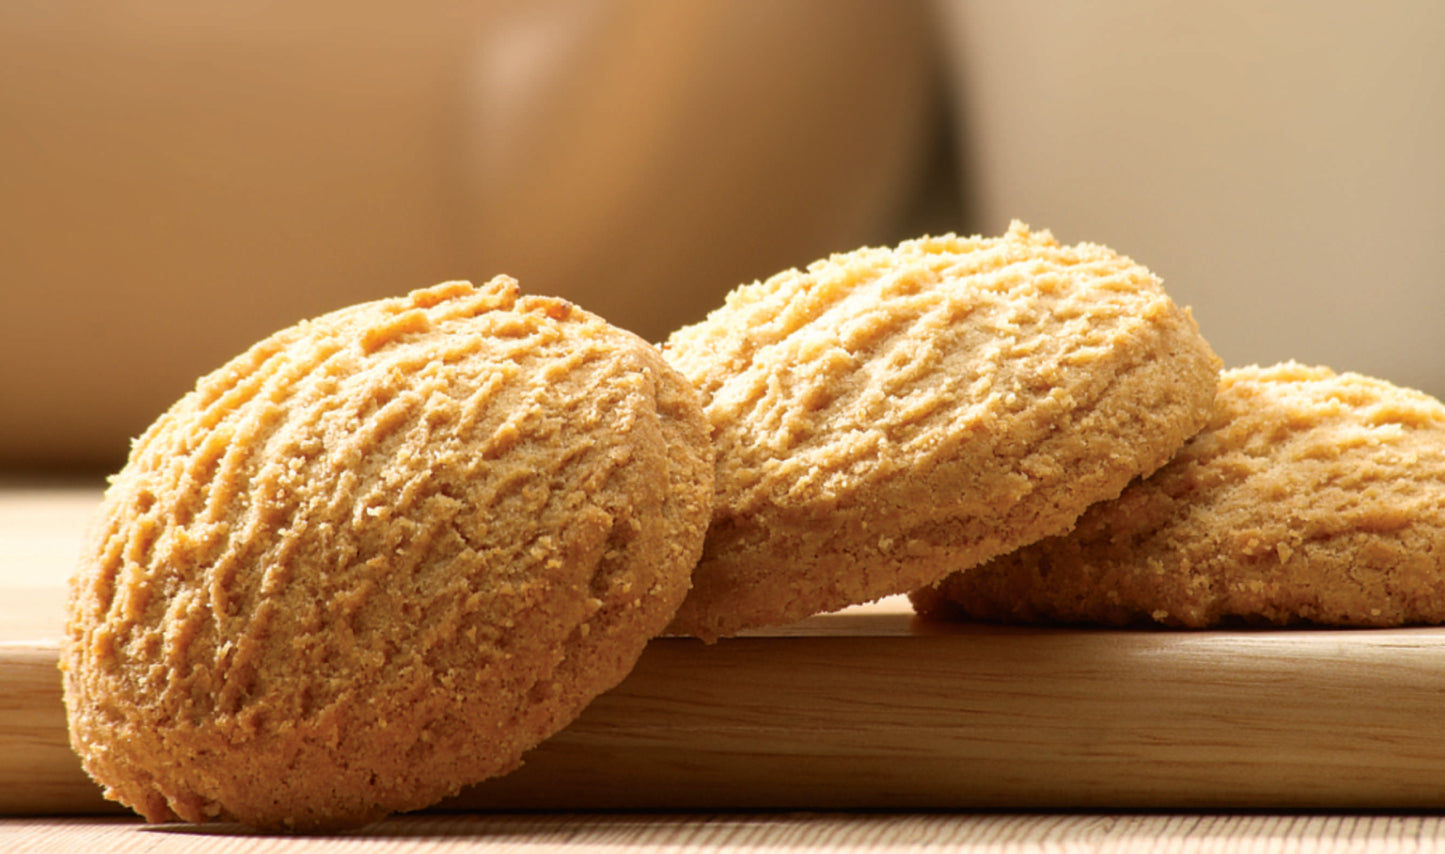 Sugar Free & Digestive Cookies - Ginger & Cinnamon - 200g